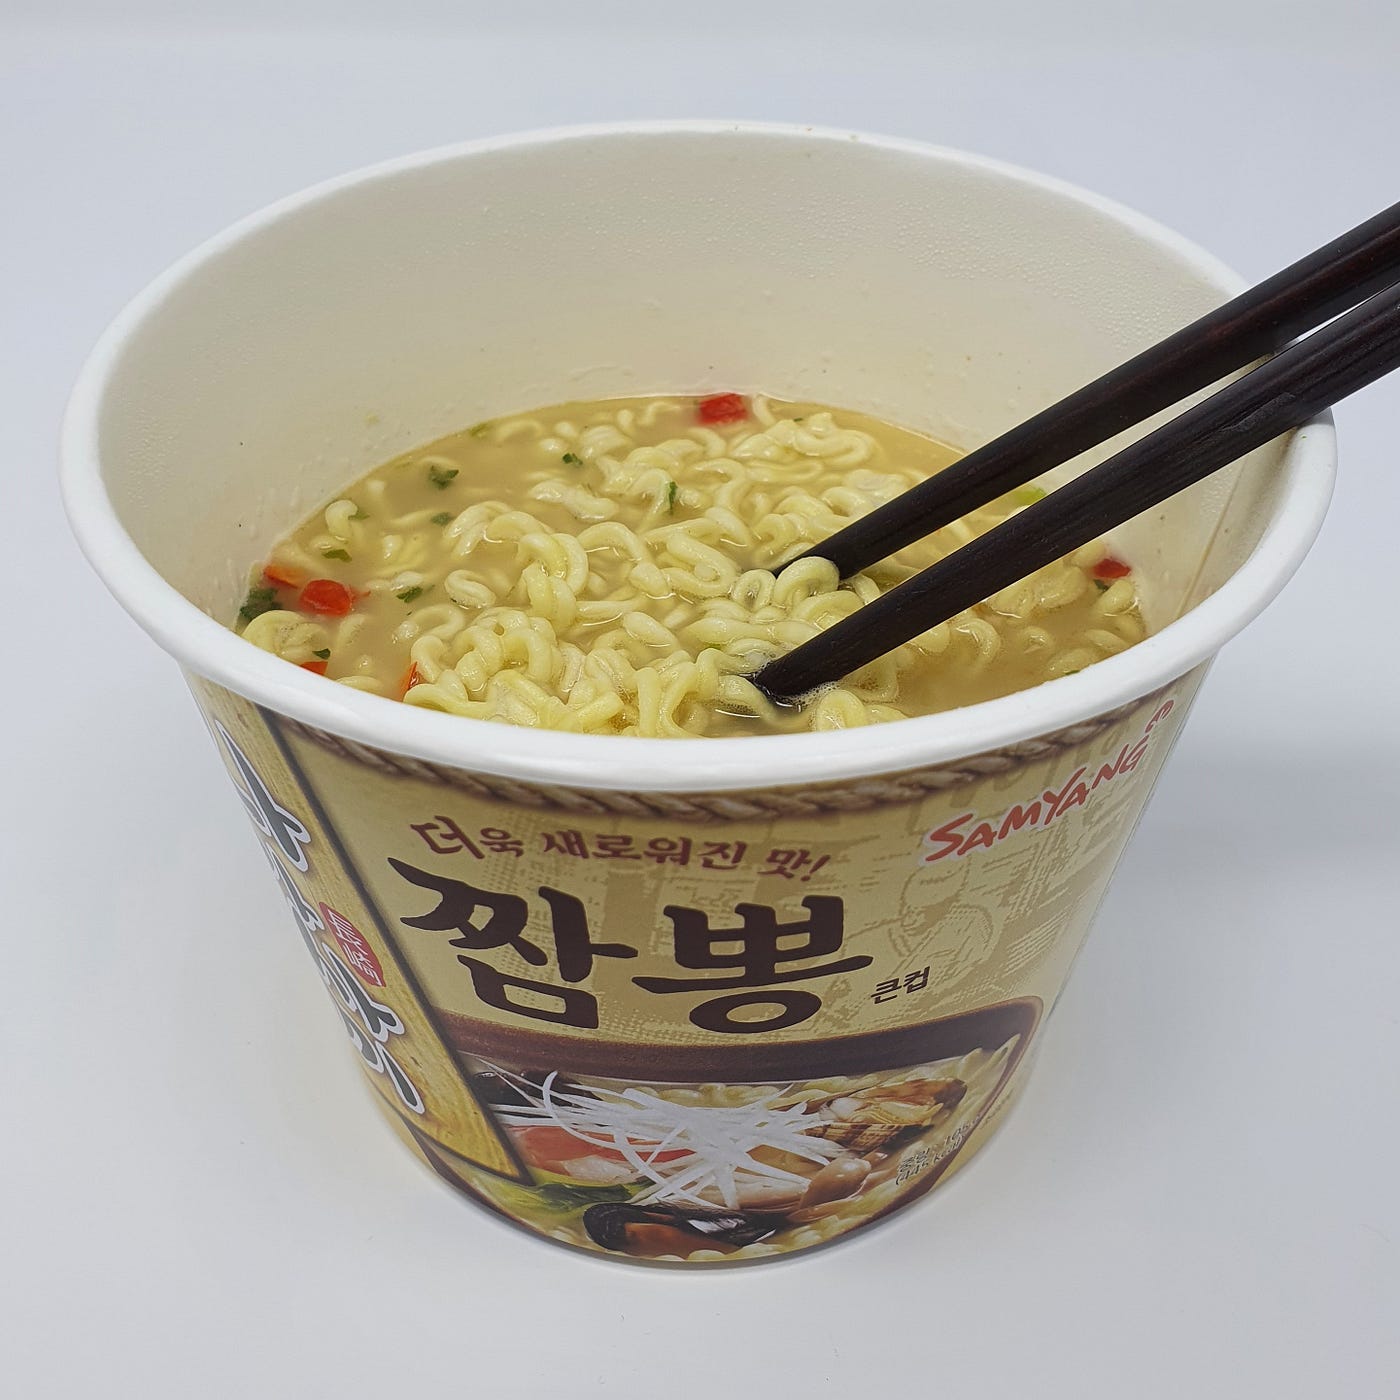 A finished cup of Samyang Nagasaki Jjambbong Instant Noodles with chopsticks in.